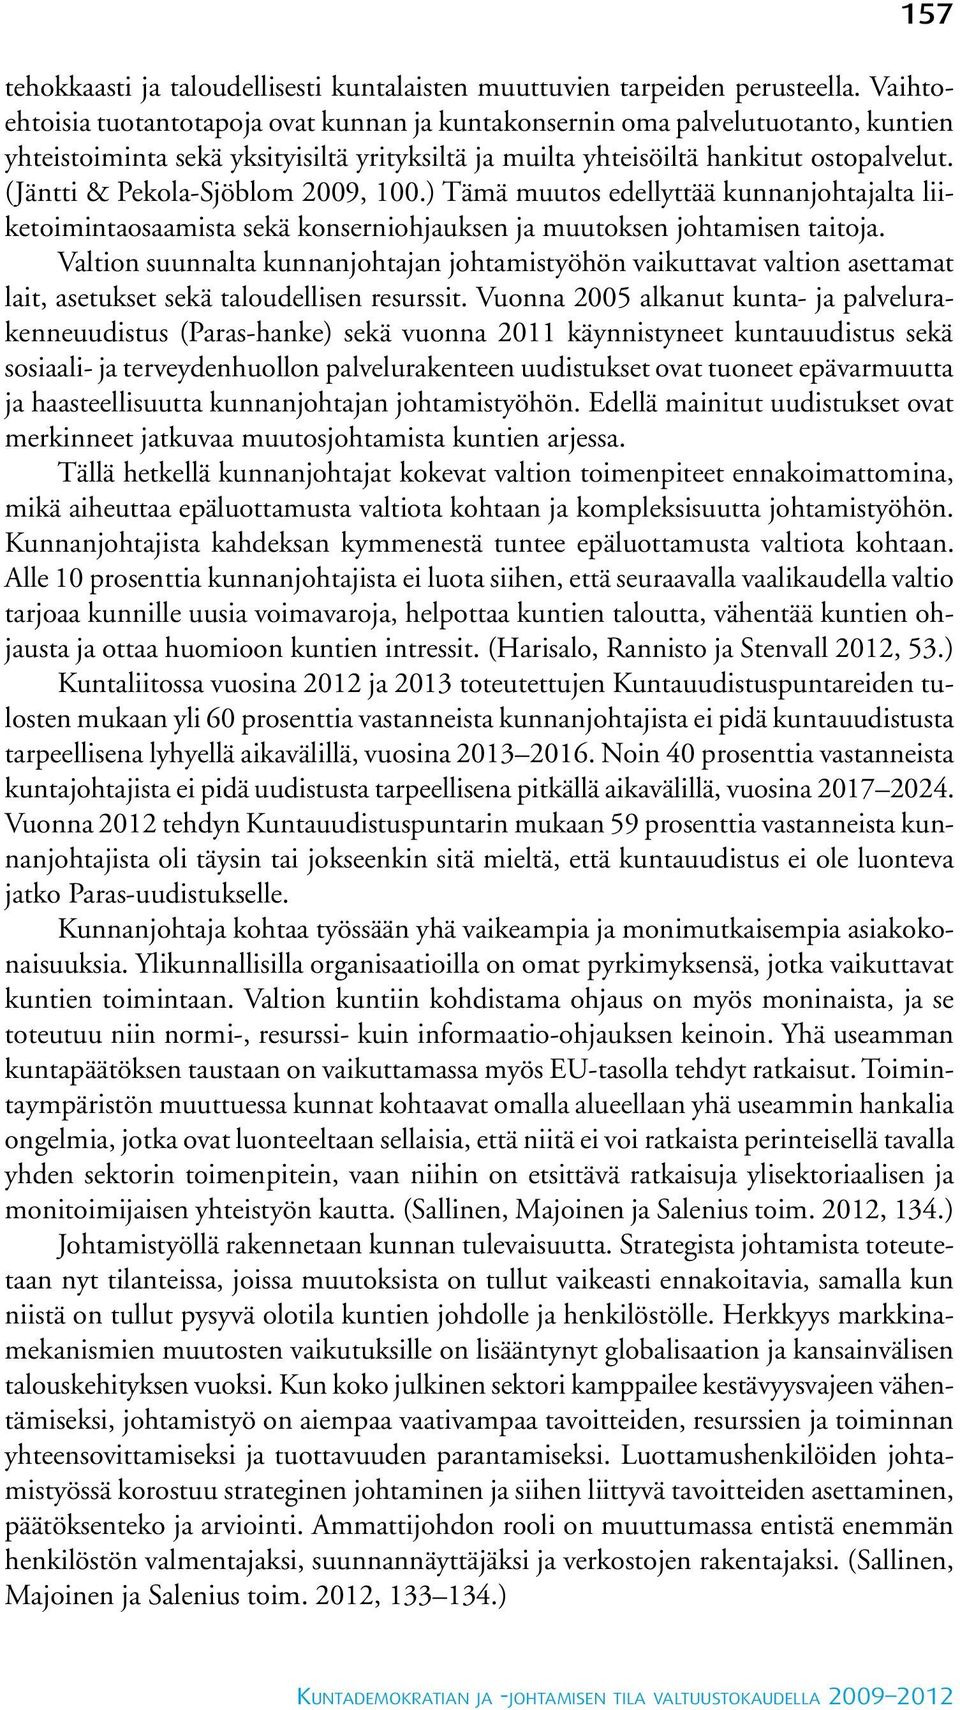 (Jäntti & Pekola-Sjöblom 2009, 100.) Tämä muutos edellyttää kunnanjohtajalta liiketoimintaosaamista sekä konserniohjauksen ja muutoksen johtamisen taitoja.